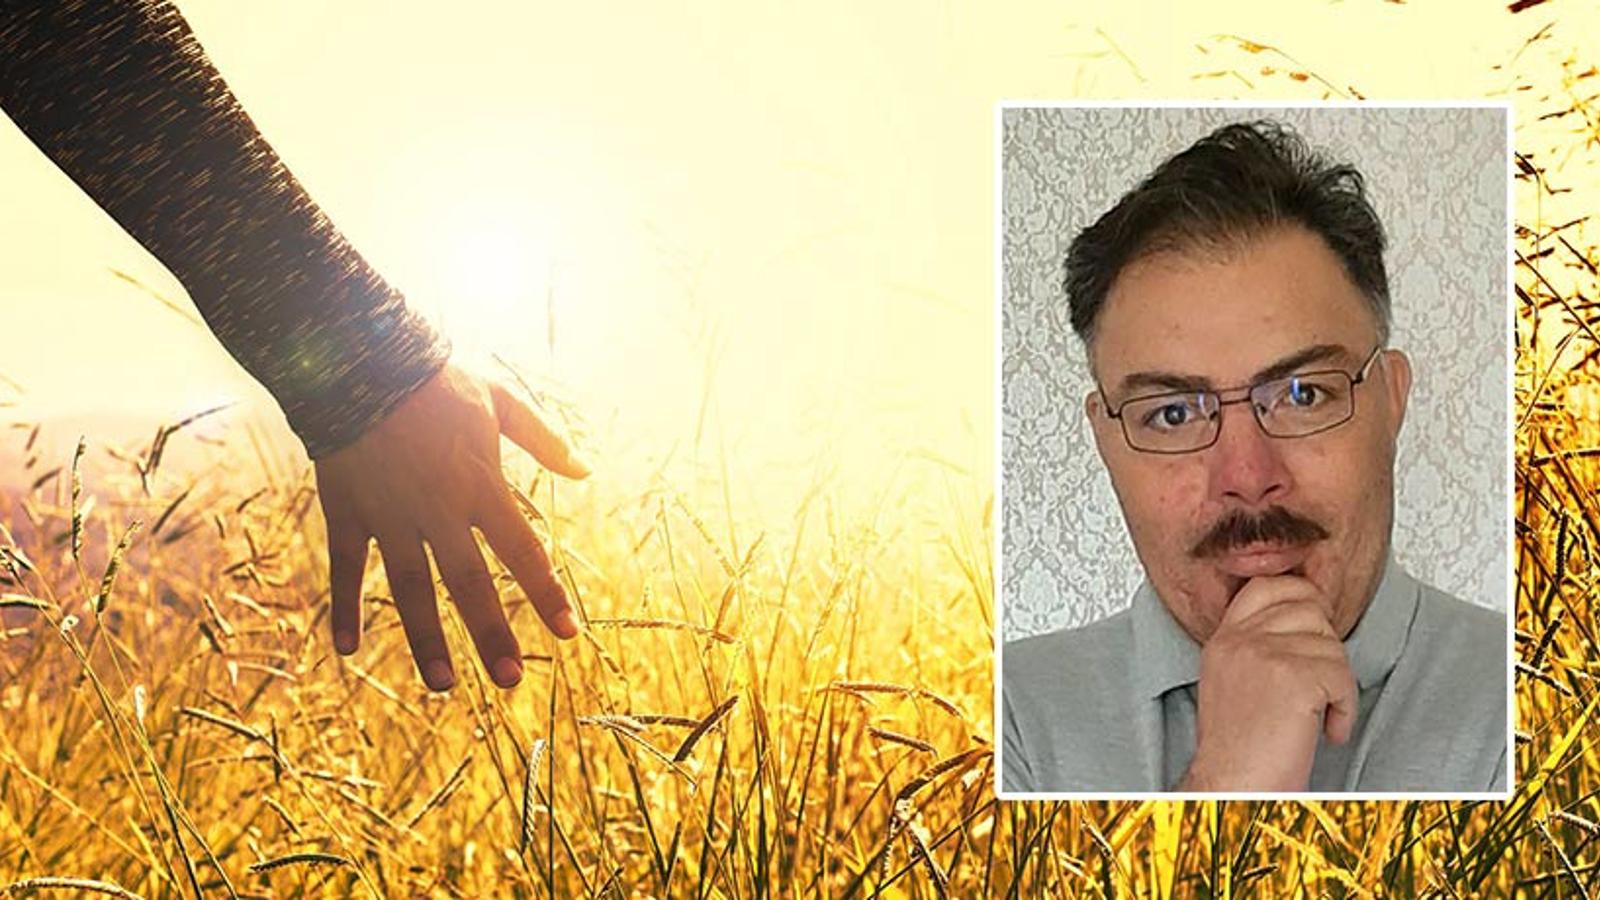 Till vänster: En person som drar handen mot grässtrån på en äng. Till höger: Porträttbild av Alexis Magnusson.